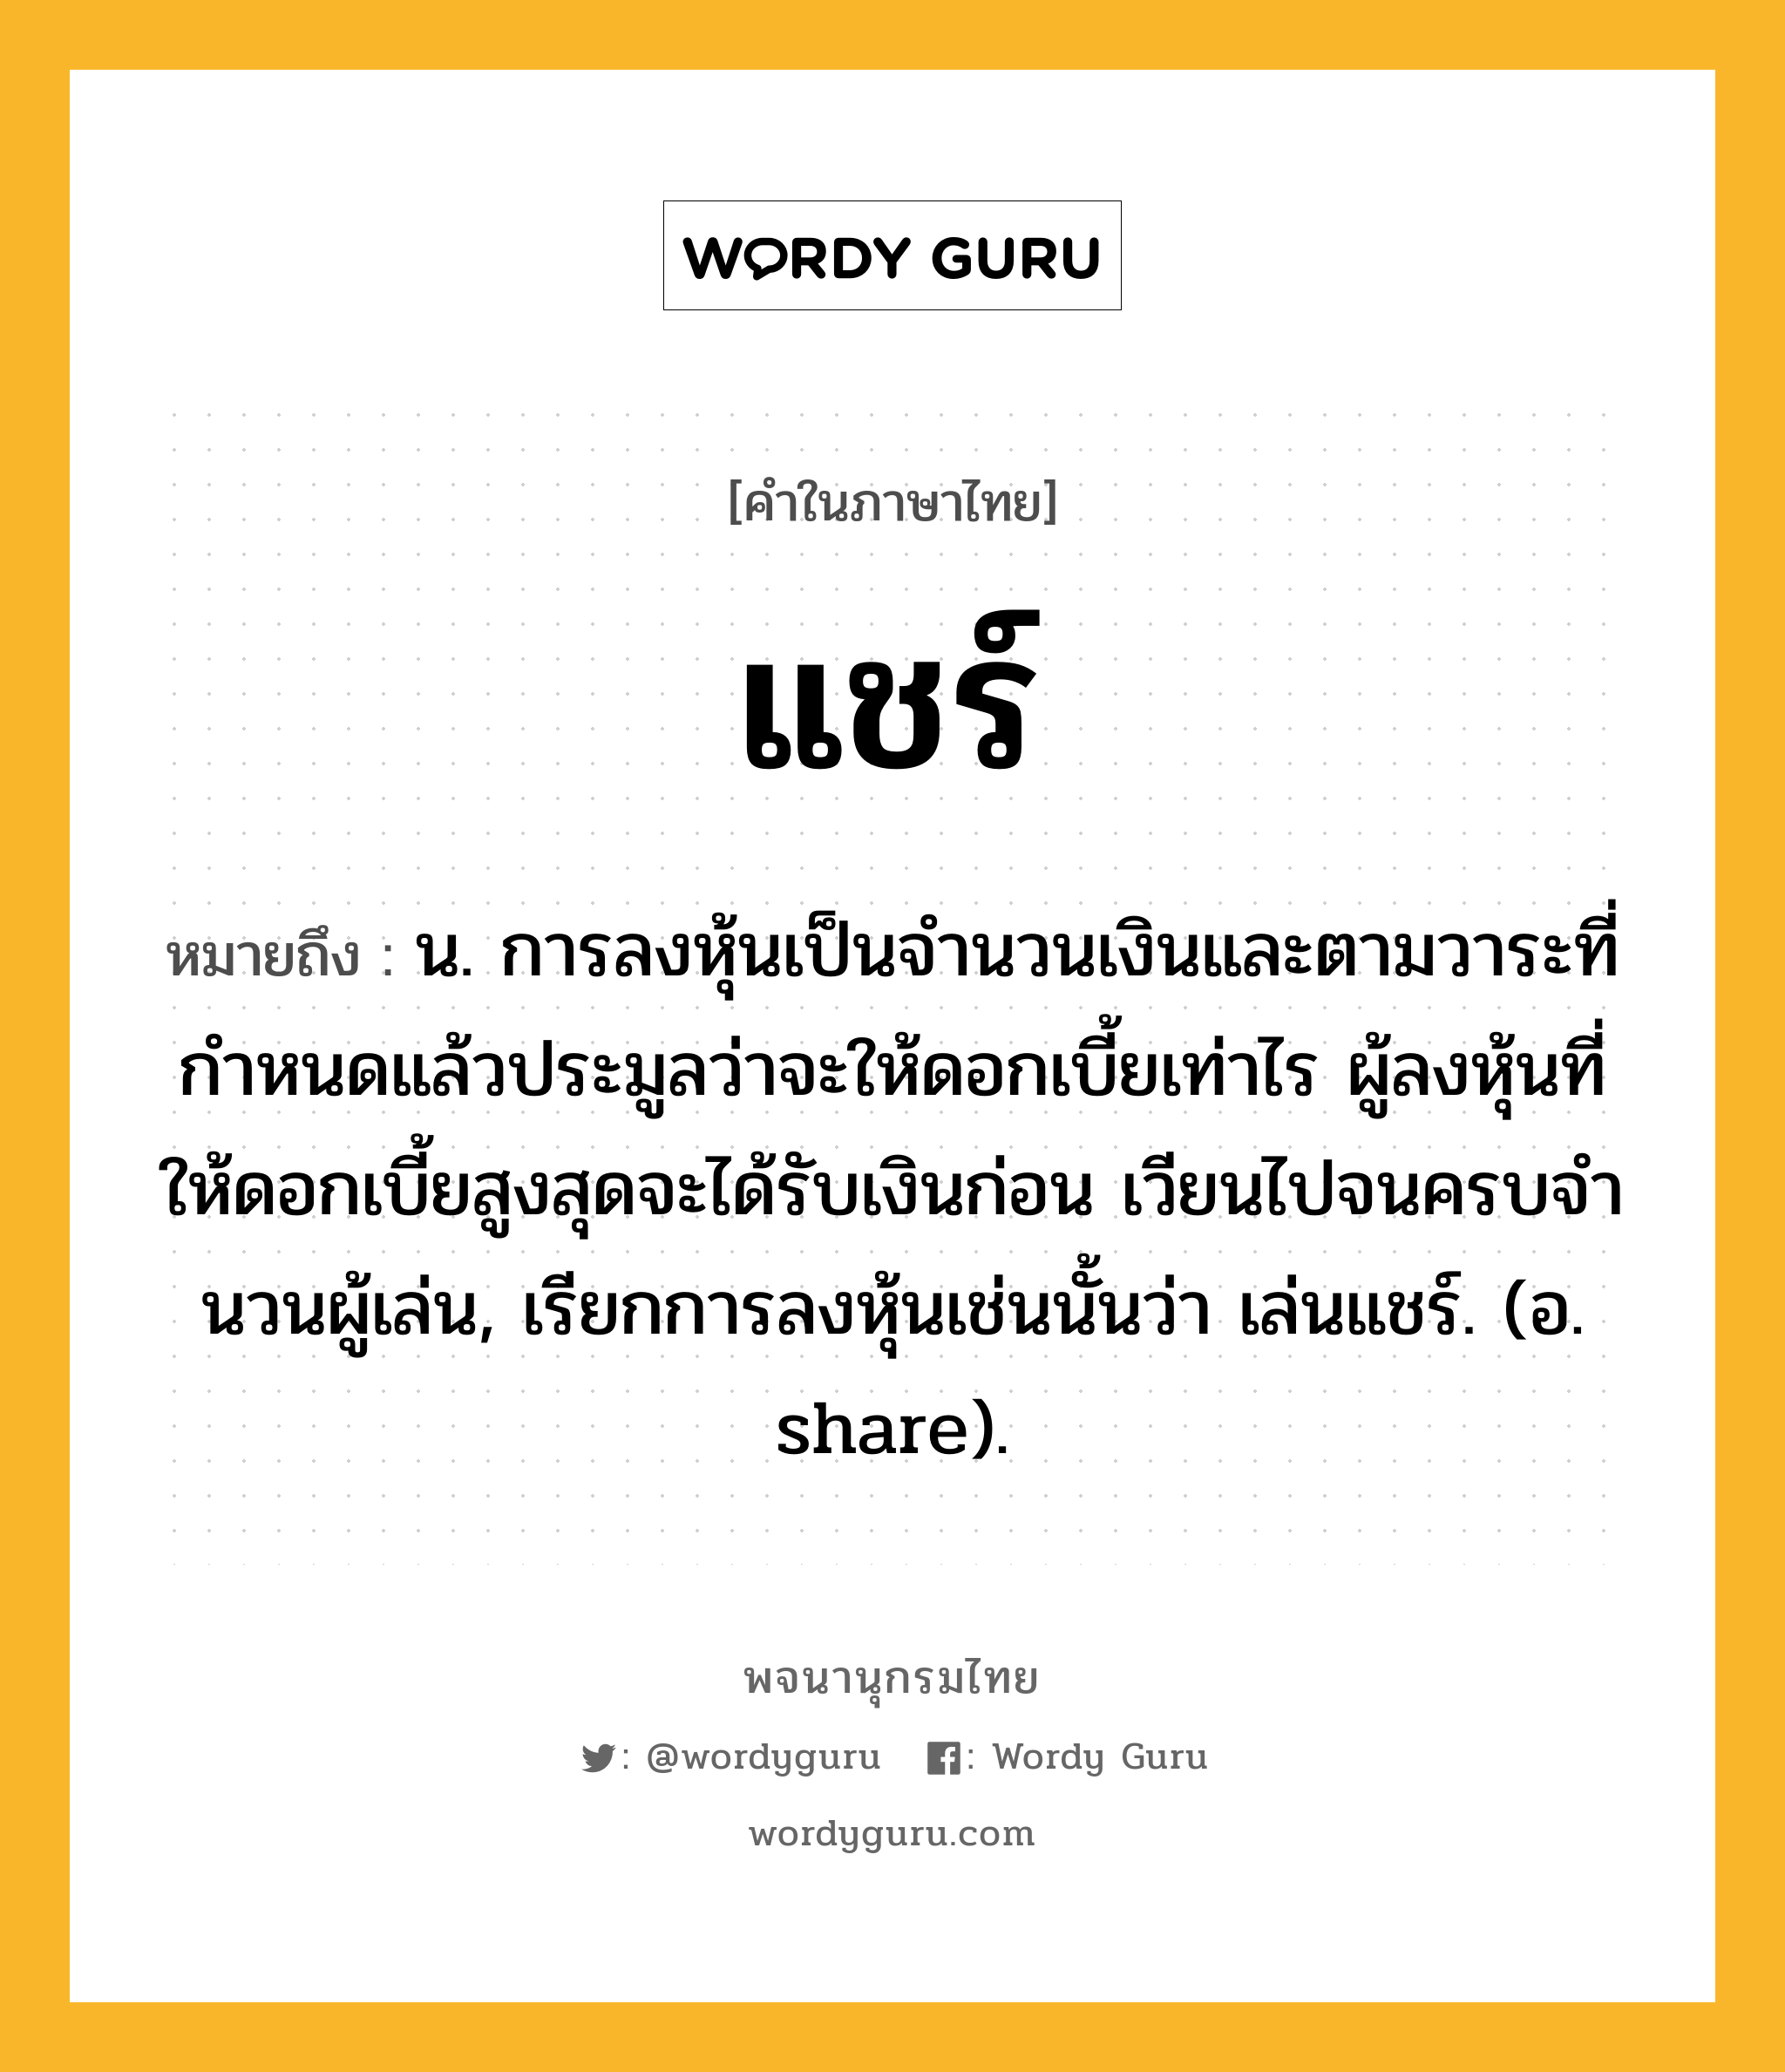 แชร์ หมายถึงอะไร?, คำในภาษาไทย แชร์ หมายถึง น. การลงหุ้นเป็นจํานวนเงินและตามวาระที่กําหนดแล้วประมูลว่าจะให้ดอกเบี้ยเท่าไร ผู้ลงหุ้นที่ให้ดอกเบี้ยสูงสุดจะได้รับเงินก่อน เวียนไปจนครบจํานวนผู้เล่น, เรียกการลงหุ้นเช่นนั้นว่า เล่นแชร์. (อ. share).